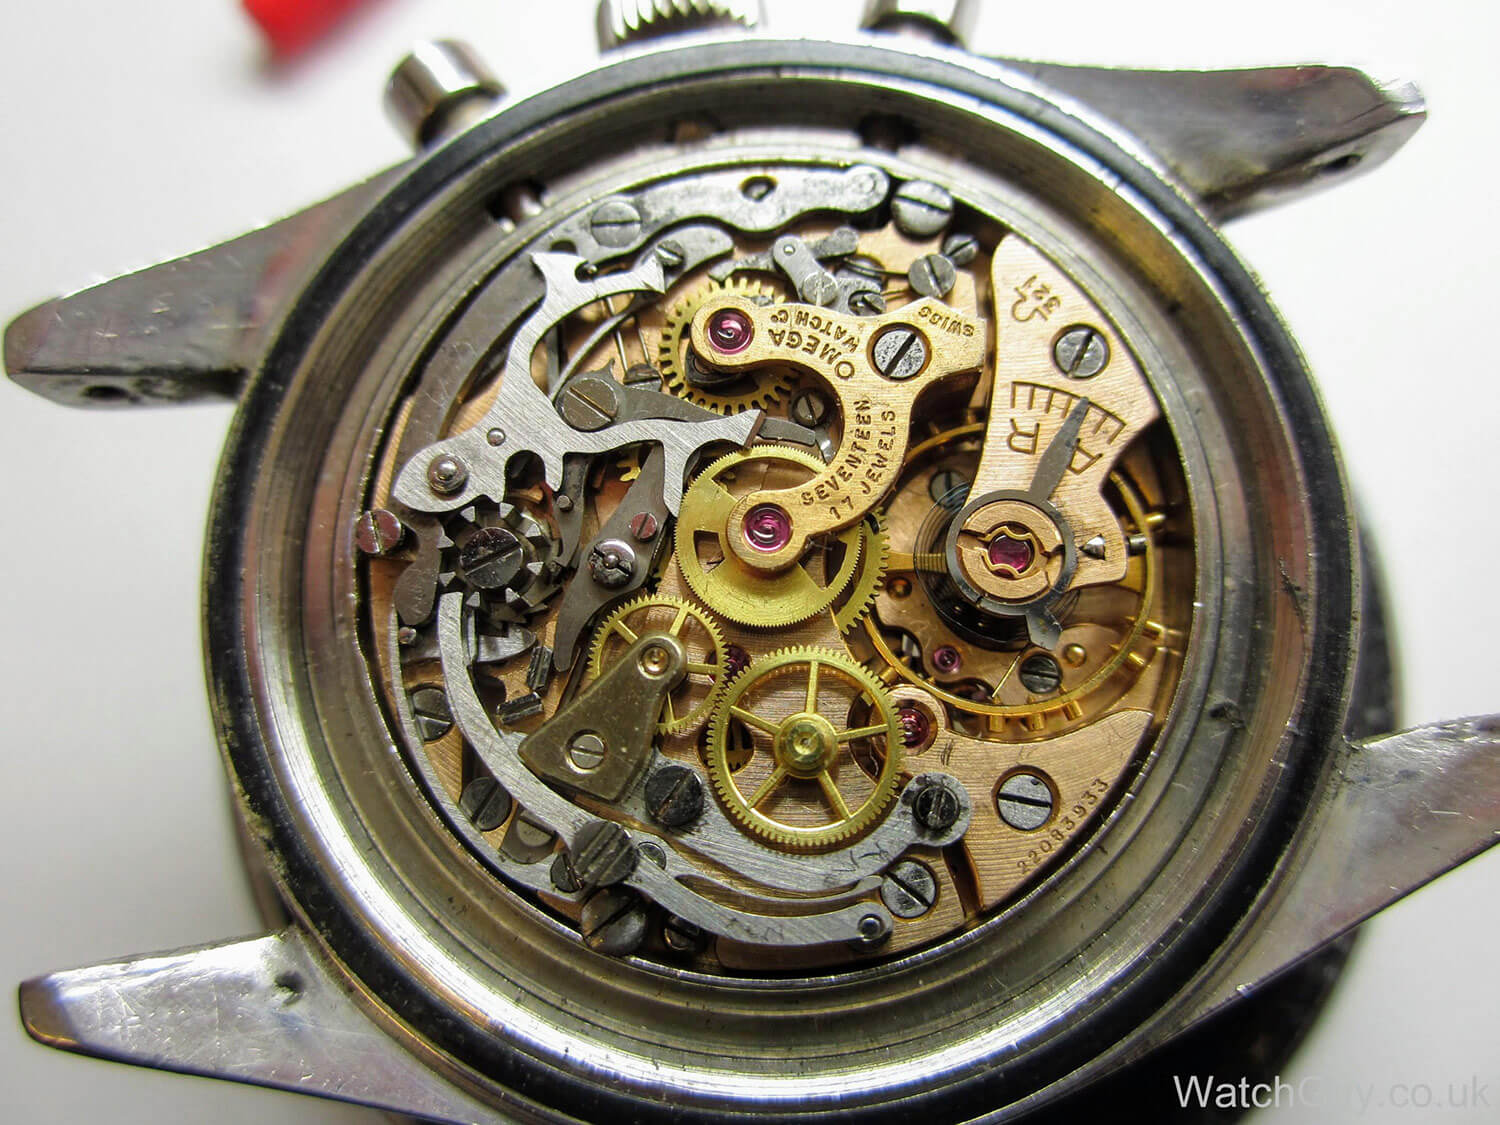 Omega Caliber 321 chronograph movement (photo courtesy WatchGuy.co.uk)